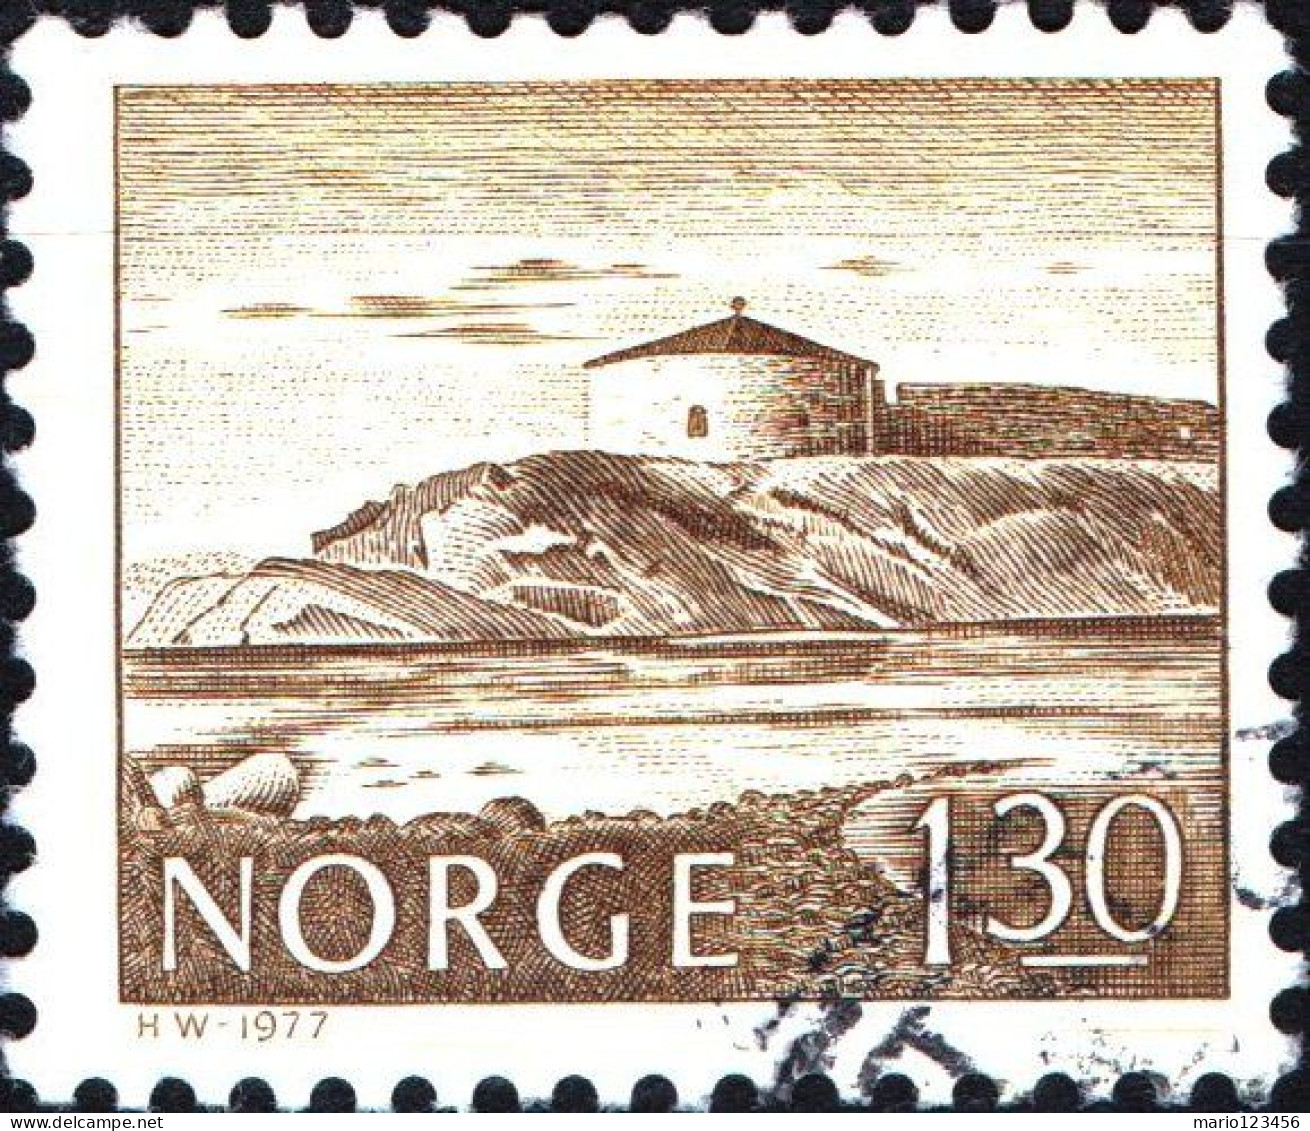 NORVEGIA, NORWAY, PAESAGGI, LANDSCAPE, 1977, USATI Mi:NO 740, Scott:NO 691, Yt:NO 696 - Usati